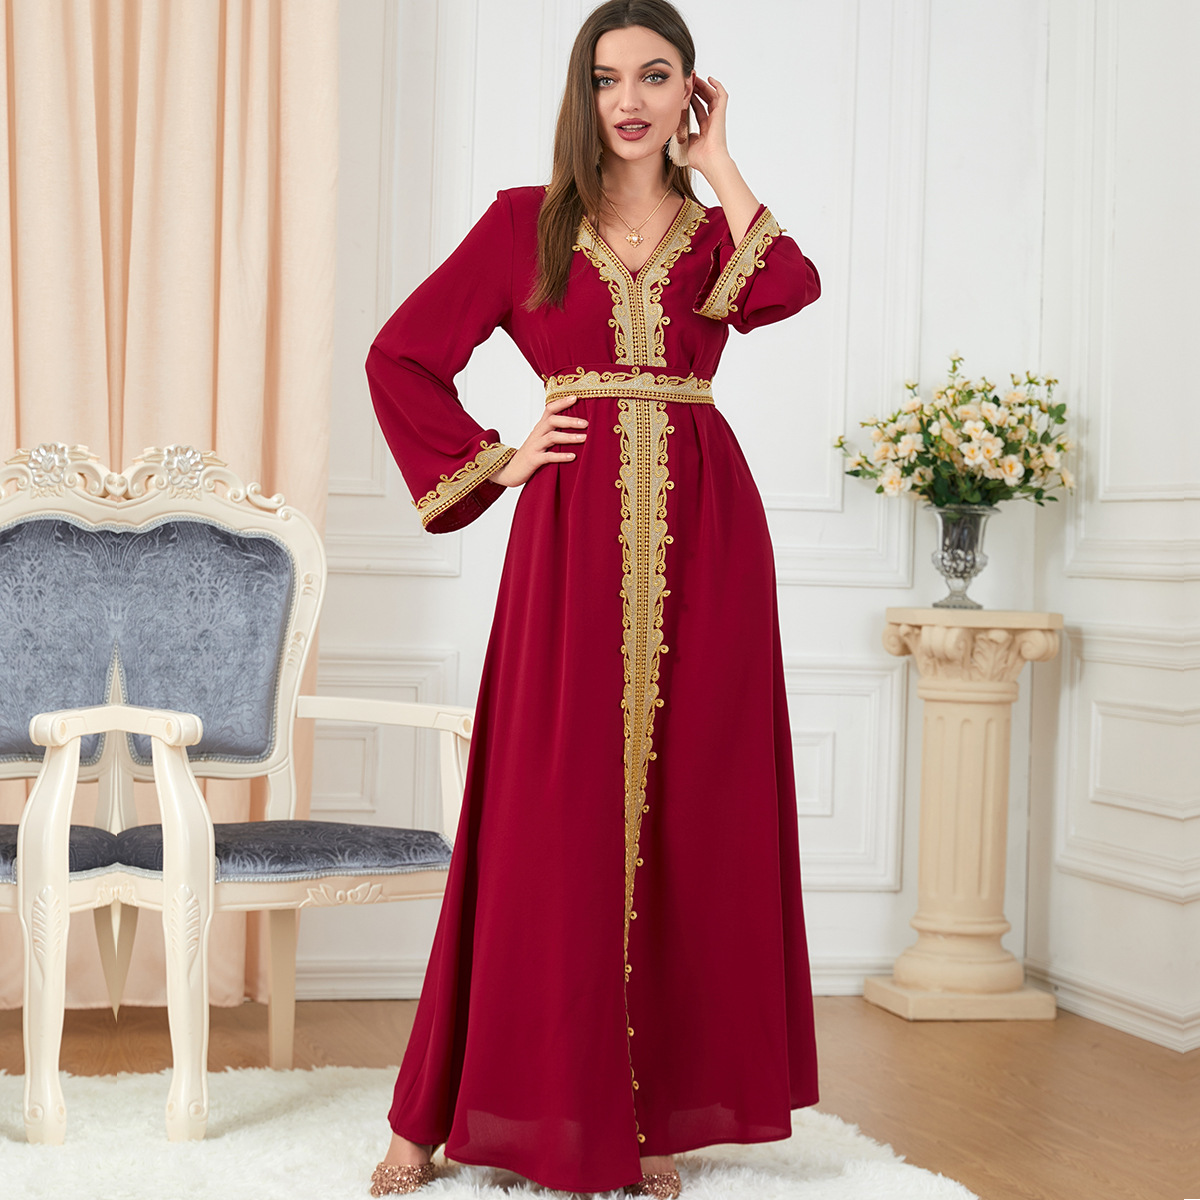 Jalabiya woven Breathable and stylish dress